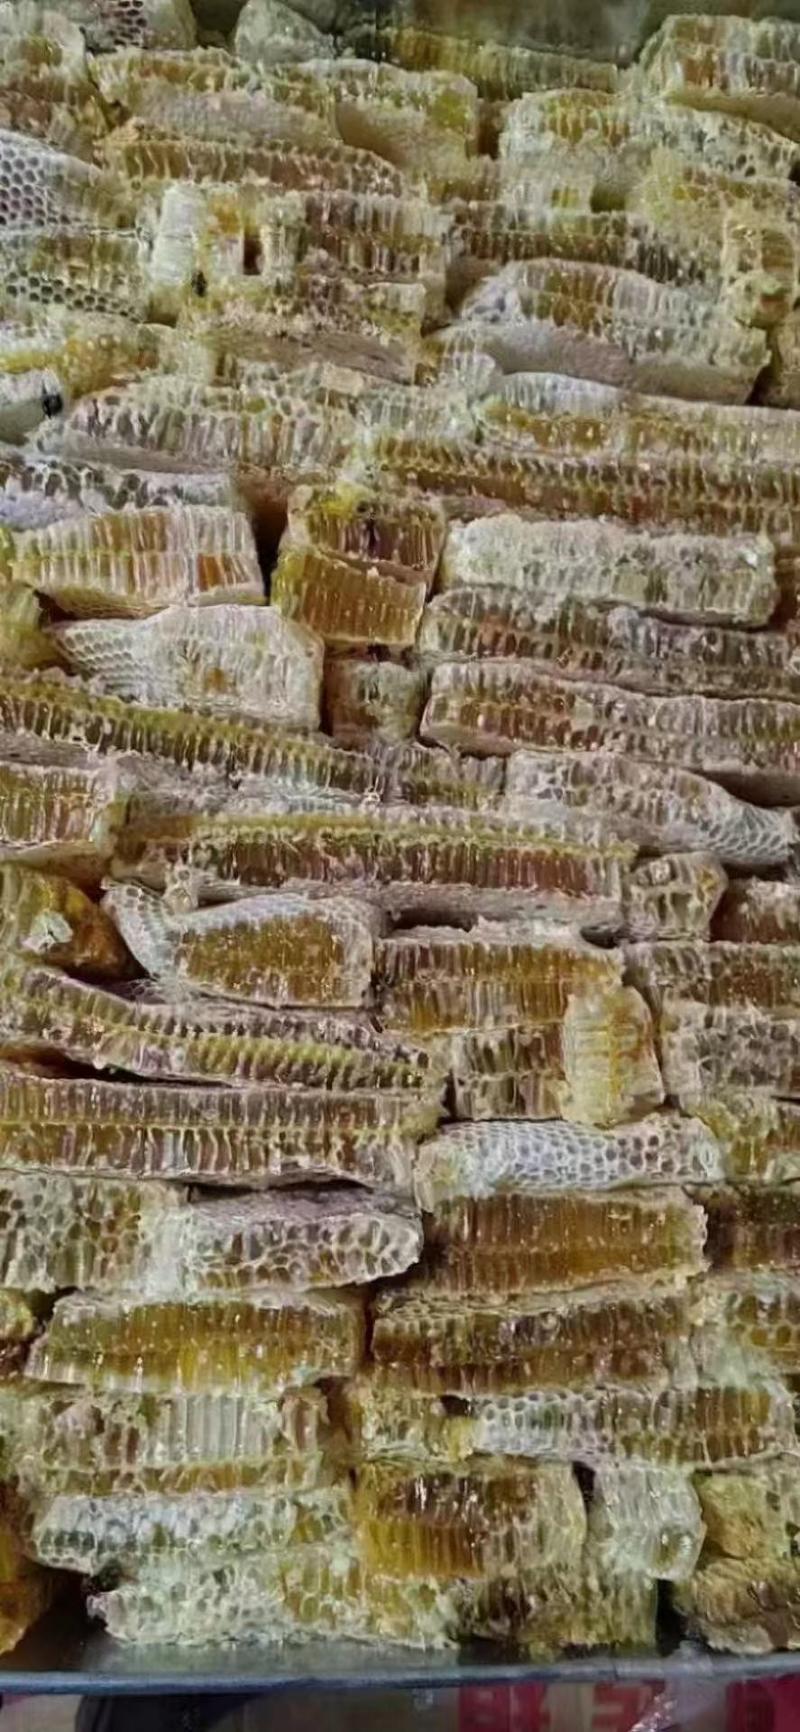 蜂巢蜜铁箱蜂蜜农家土蜂蜜散装蜂蜜批发现榨模式跑江湖地摊